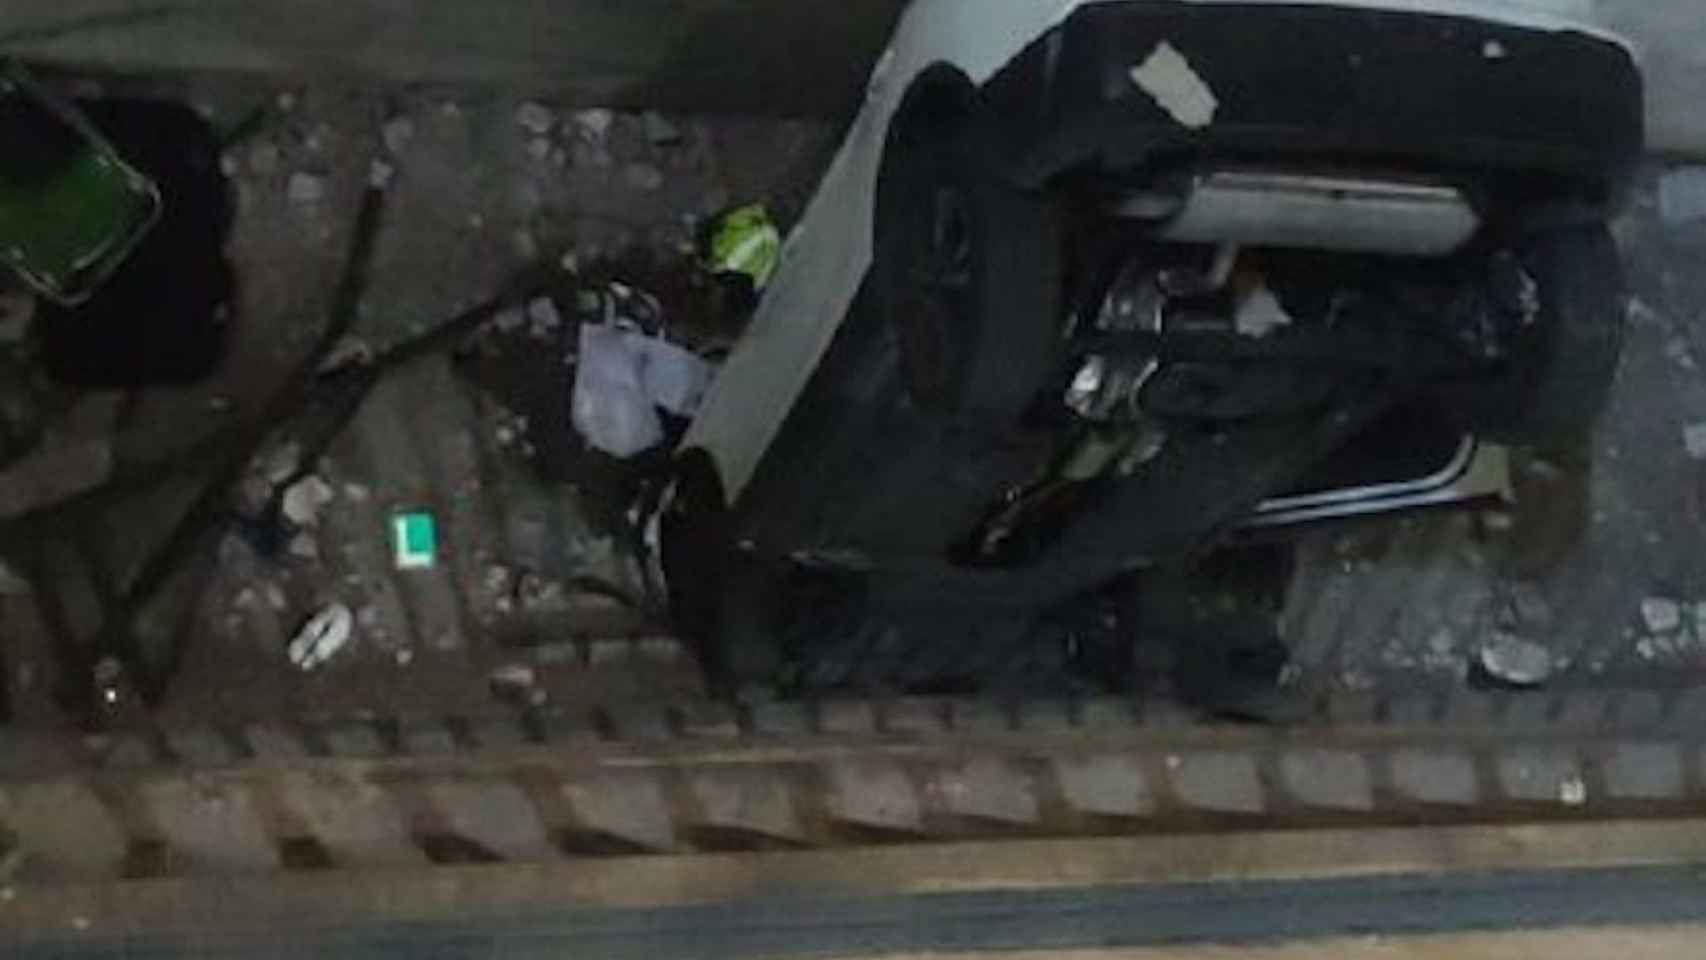 El coche que ha caído desde una altura de dos pisos en un parking de la calle Urgell / BOMBERS DE BARCELONA